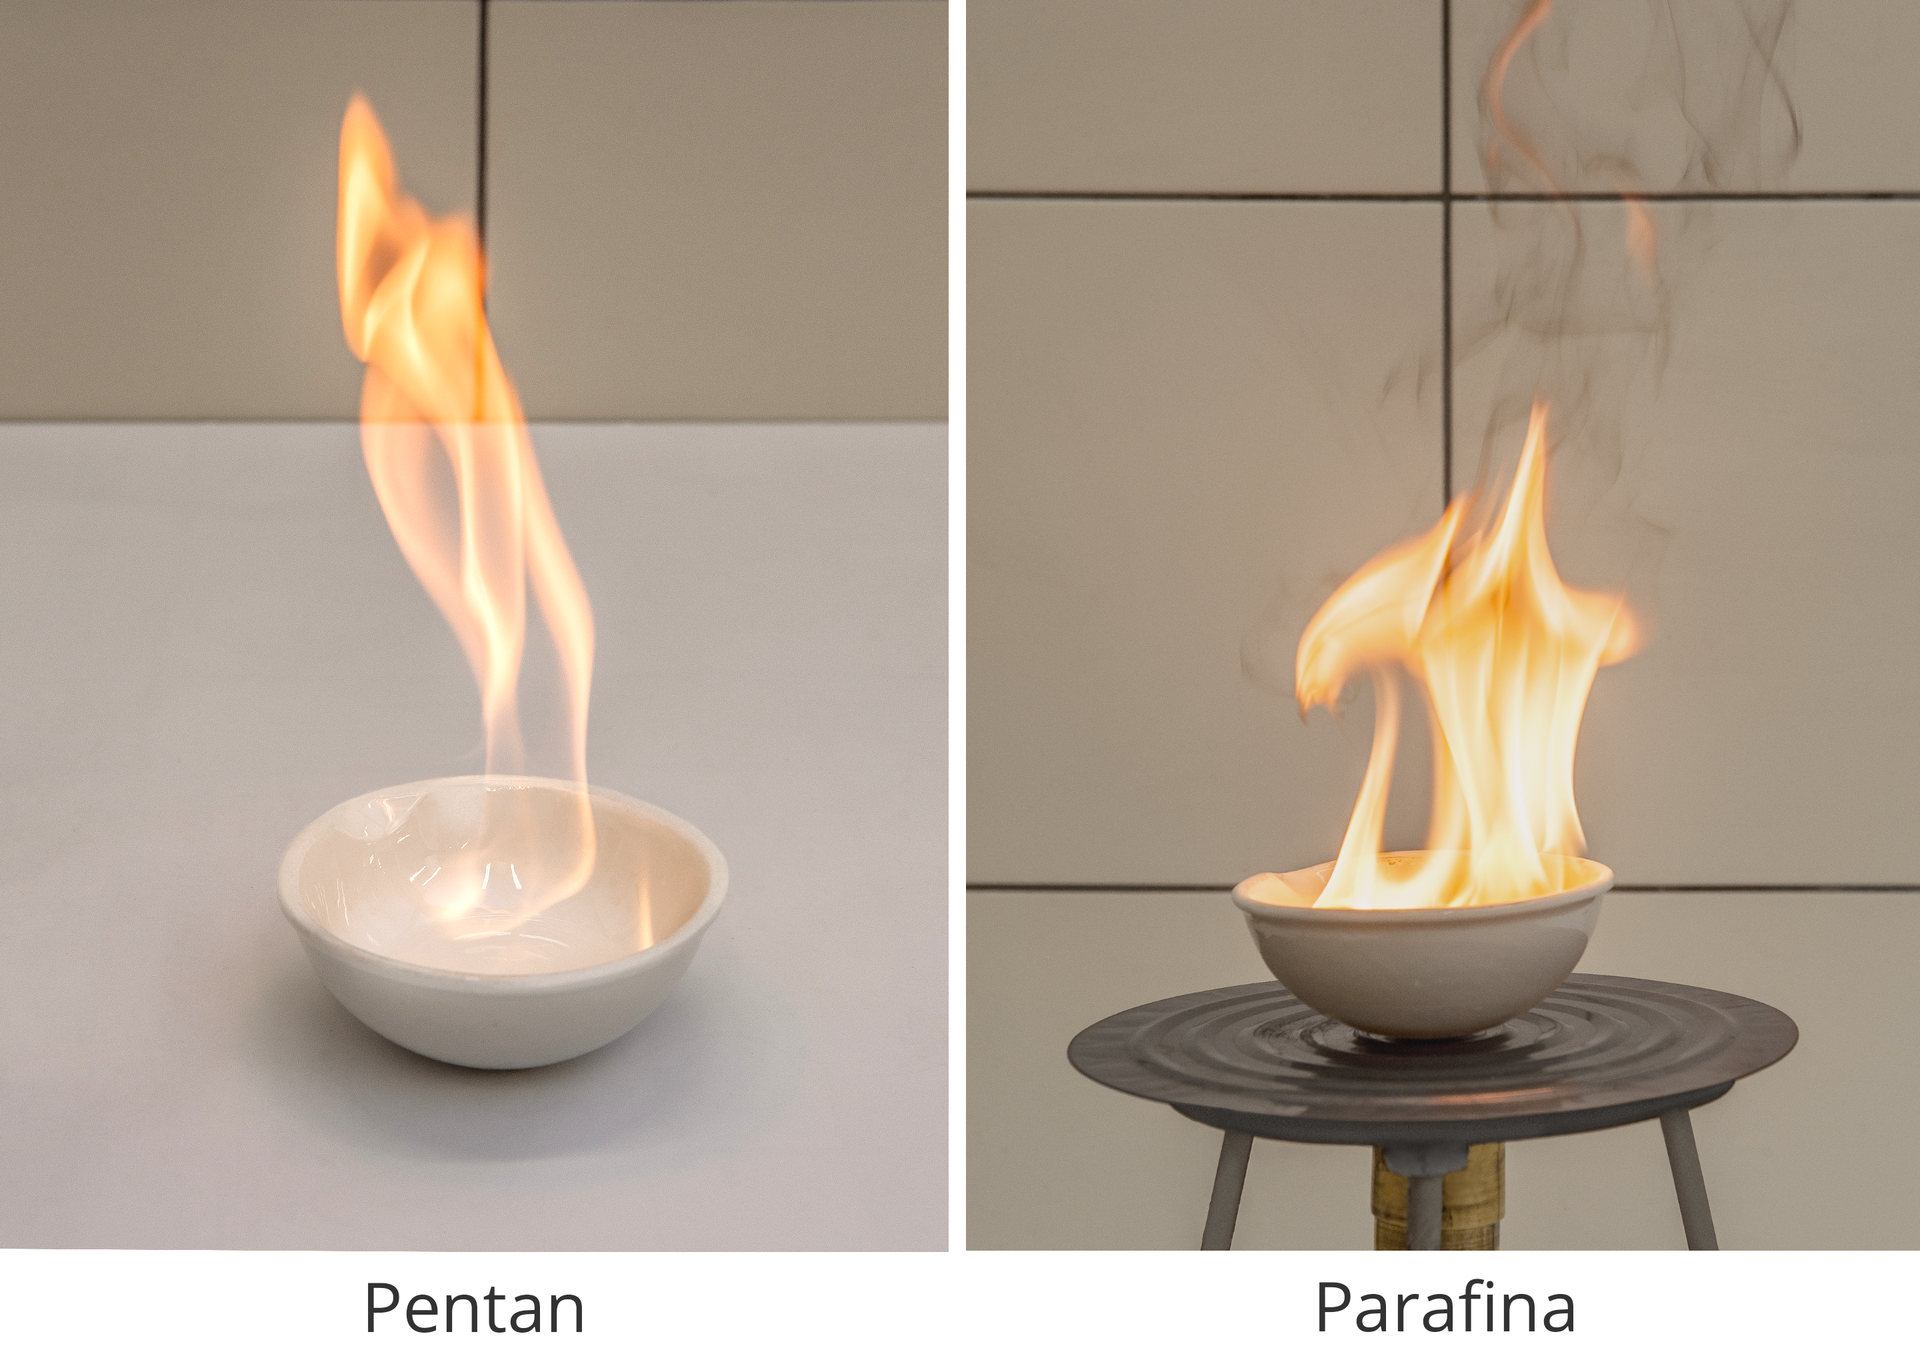 Grafika składająca się z 2 zdjęć przedstawiających spalanie pentanu i parafiny z dobrze widocznymi płomieniami.